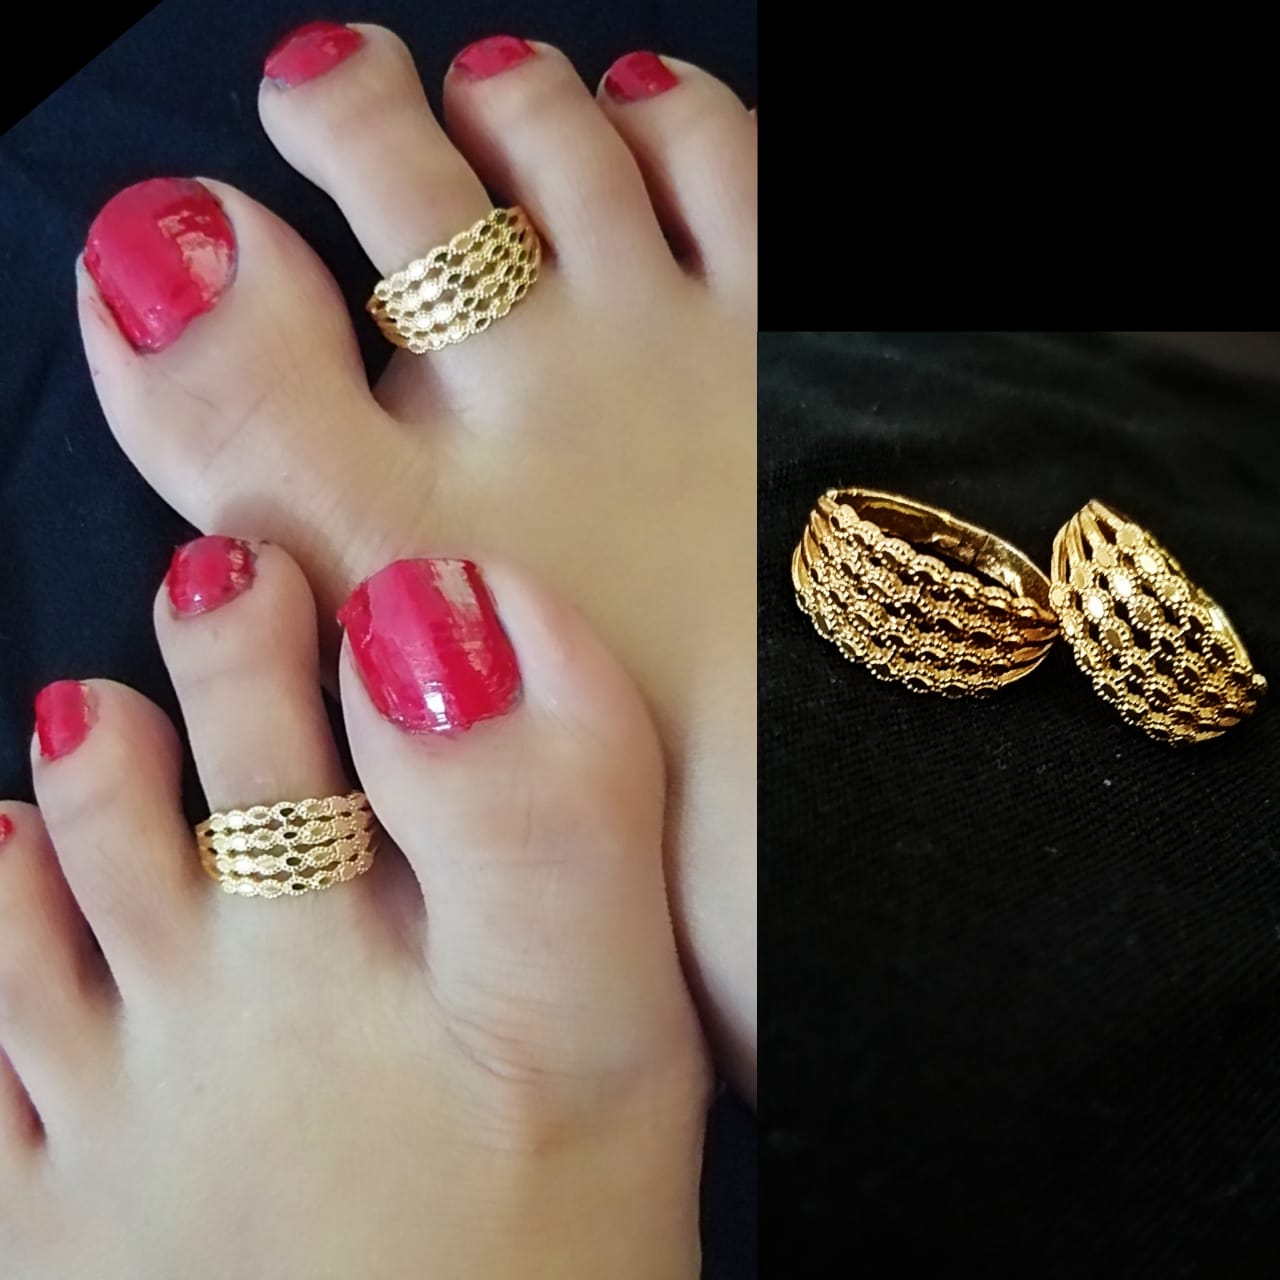 Abhooshan - This Karwa Chauth Gift Abhoooshan Designer Toe Rings or buy  yourself one. Buy link:  https://www.abhooshan.com/Silver-Jewellery-Women-Girls/Silver-Toe-Rings-Bichiya-Mettelu-Kalungura-Metti  #karwachauth2022 #gifting #GiftForWife #giftforher ...